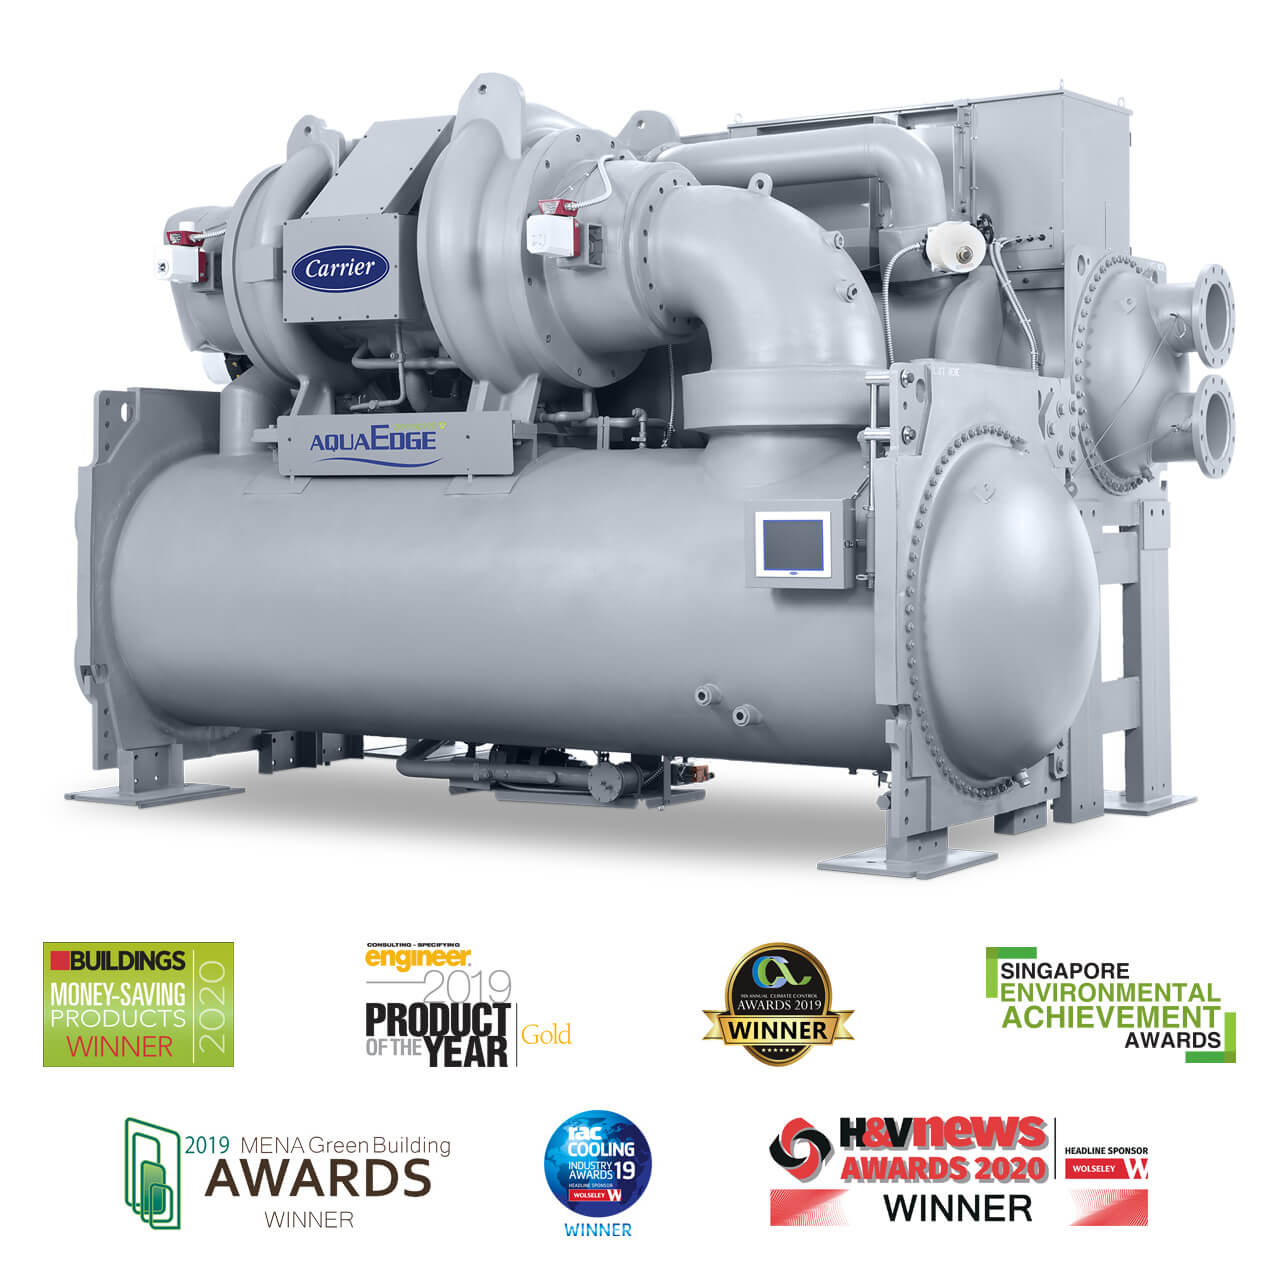 carrier-19dv-aquaedge-centrifugal-chiller-awards